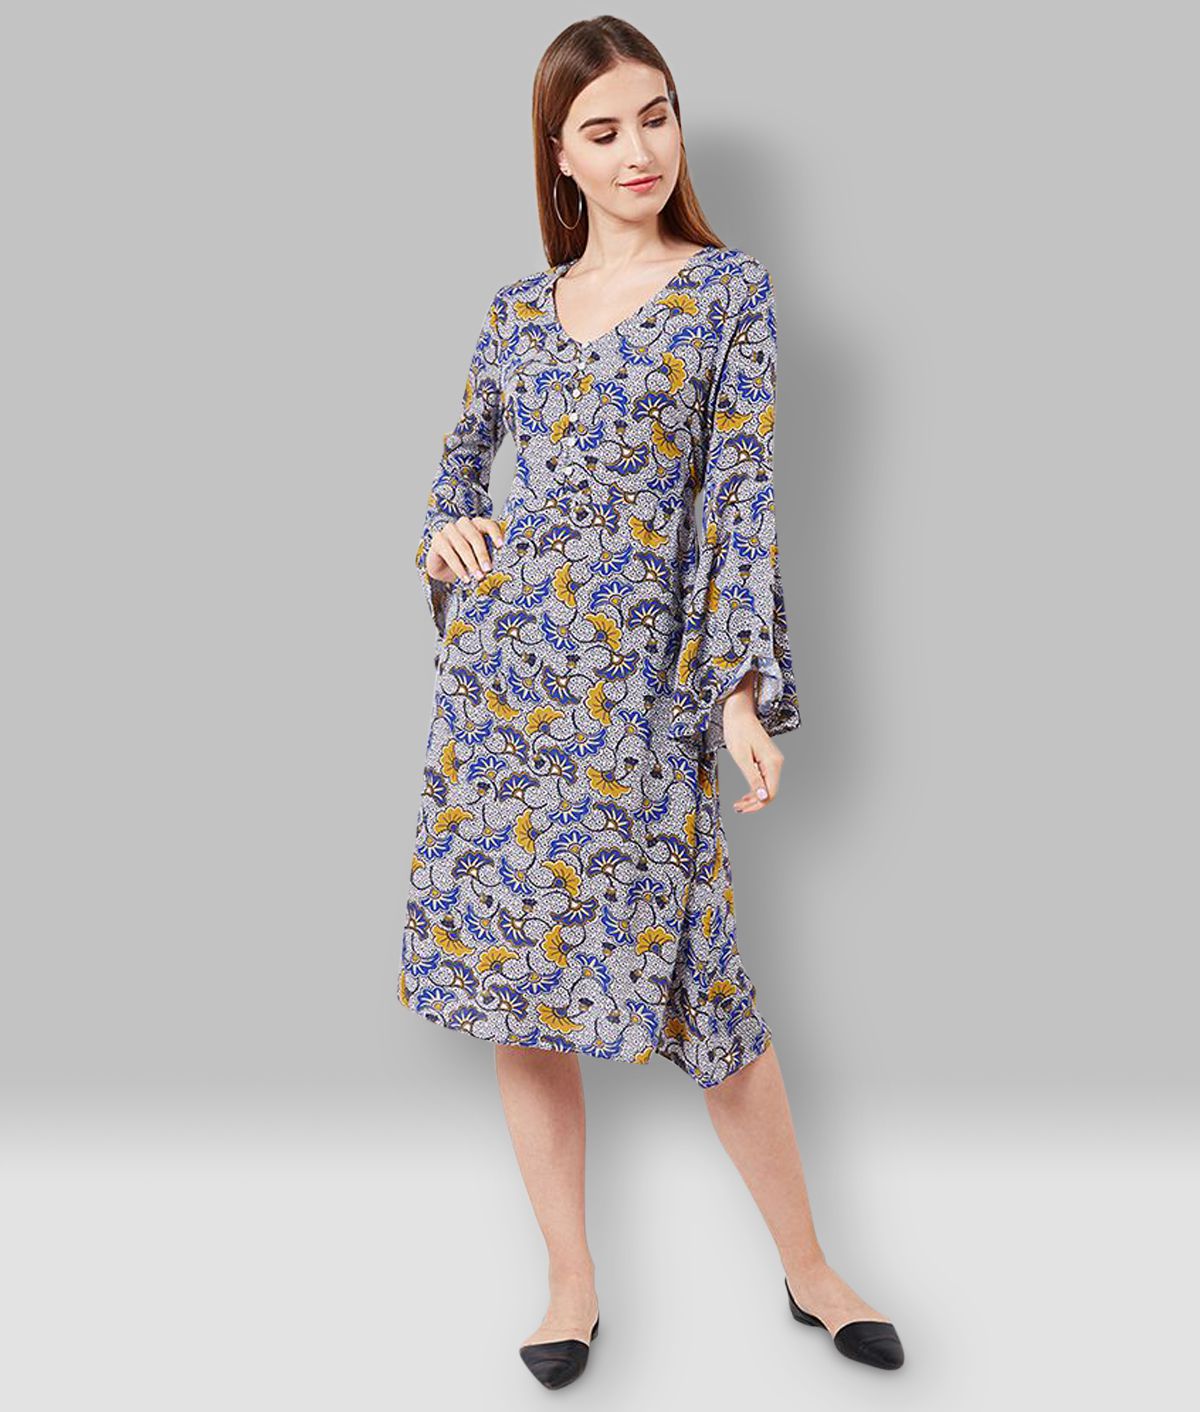 Oxolloxo Viscose Multi Color A- line Dress